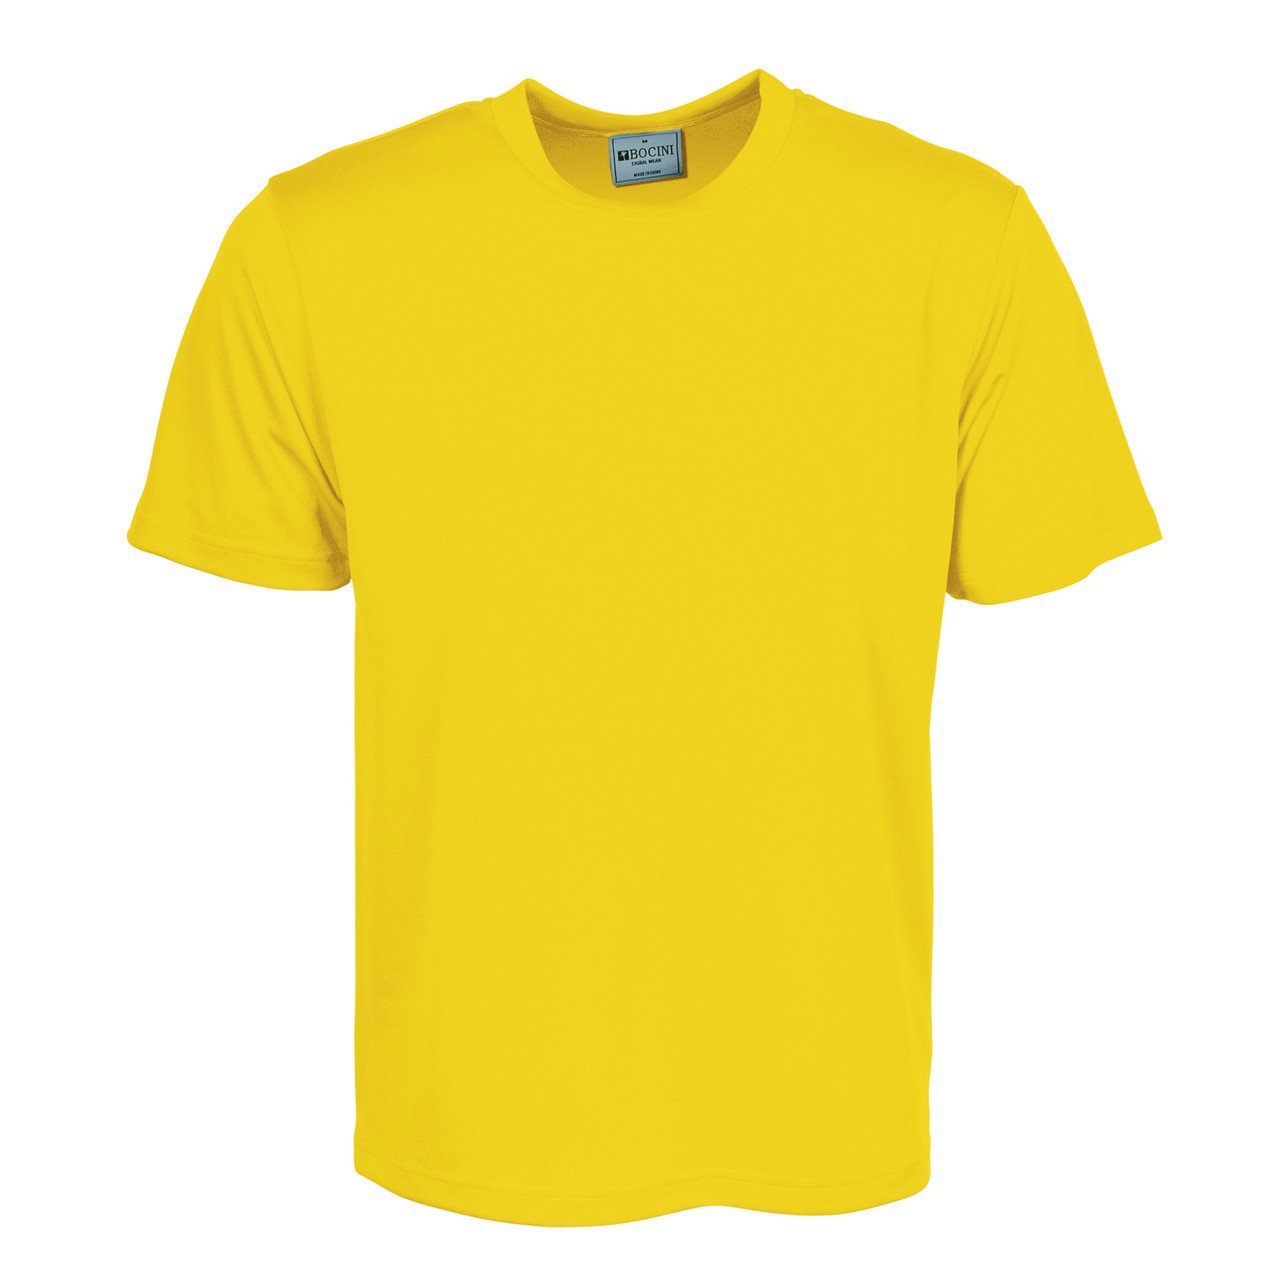 Unisex Quick Dry Micromesh Tshirt | Shop Blank Sports Team Clothing ...